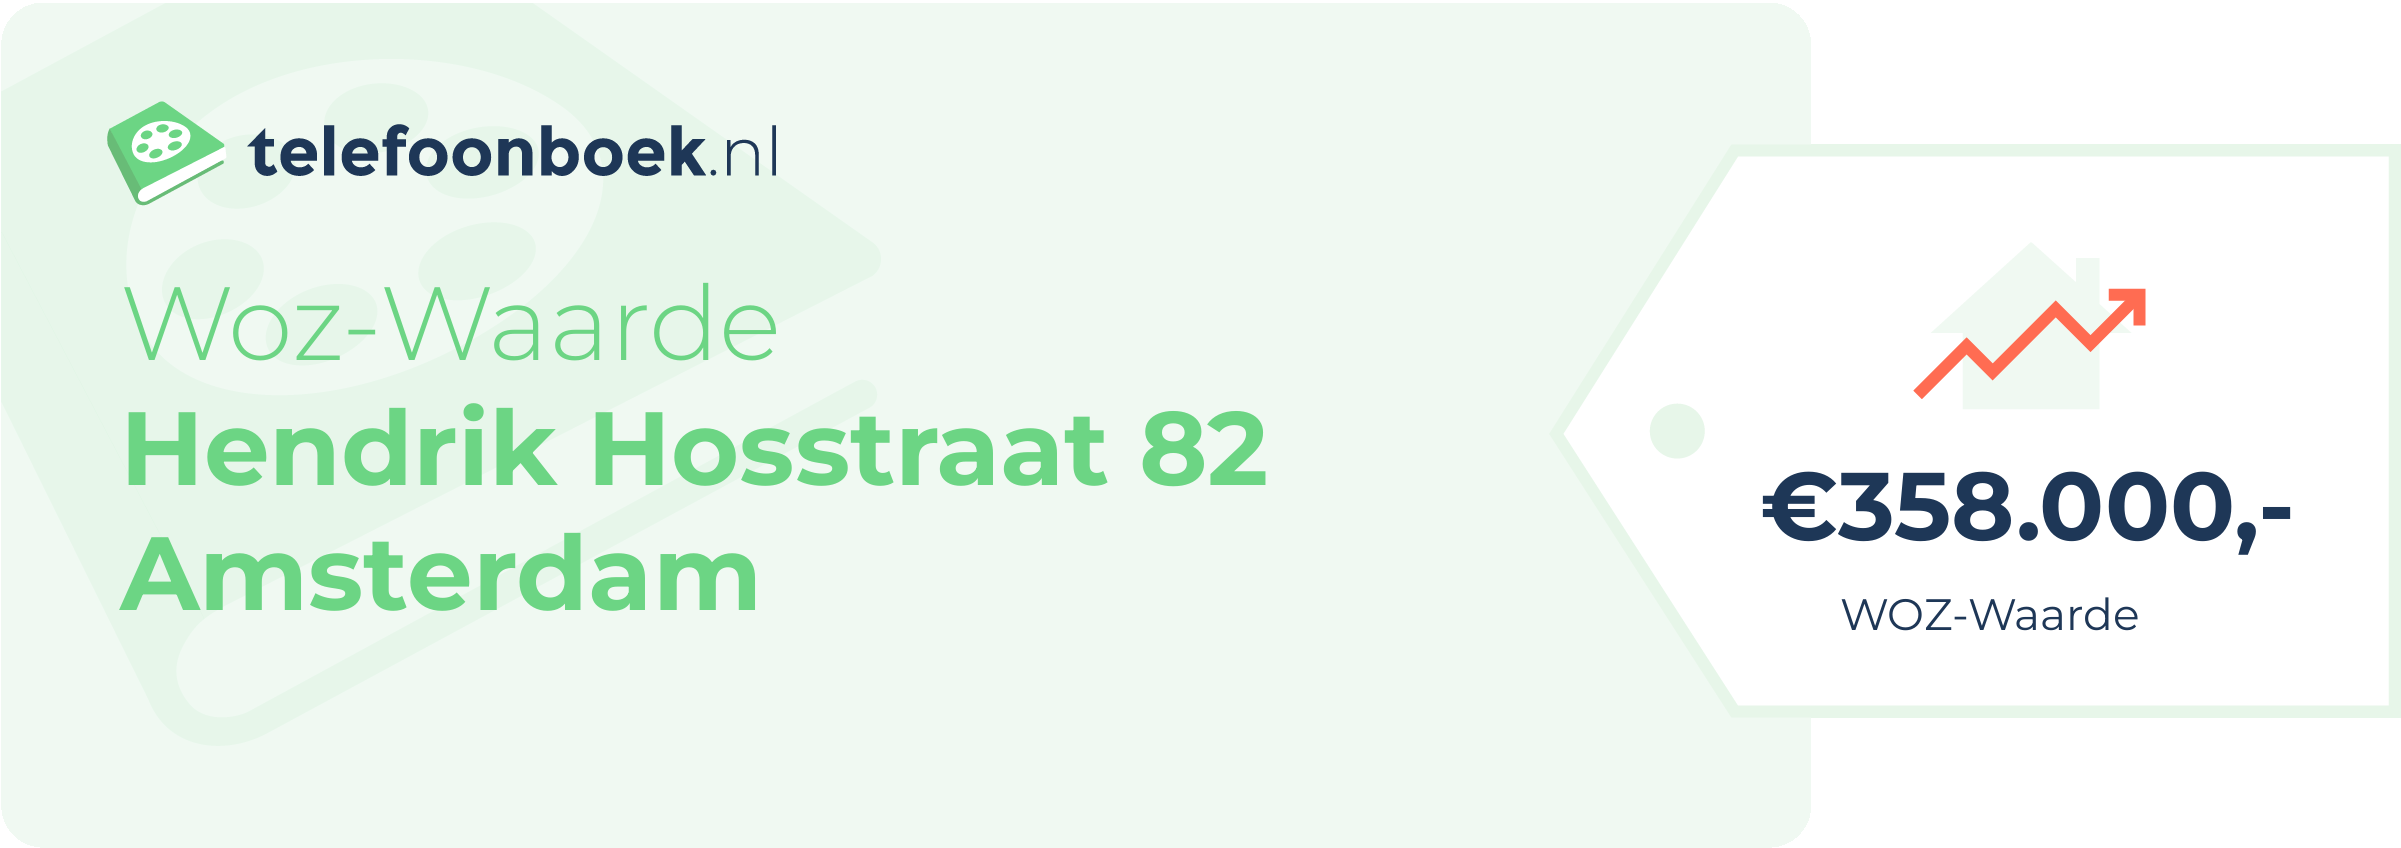 WOZ-waarde Hendrik Hosstraat 82 Amsterdam